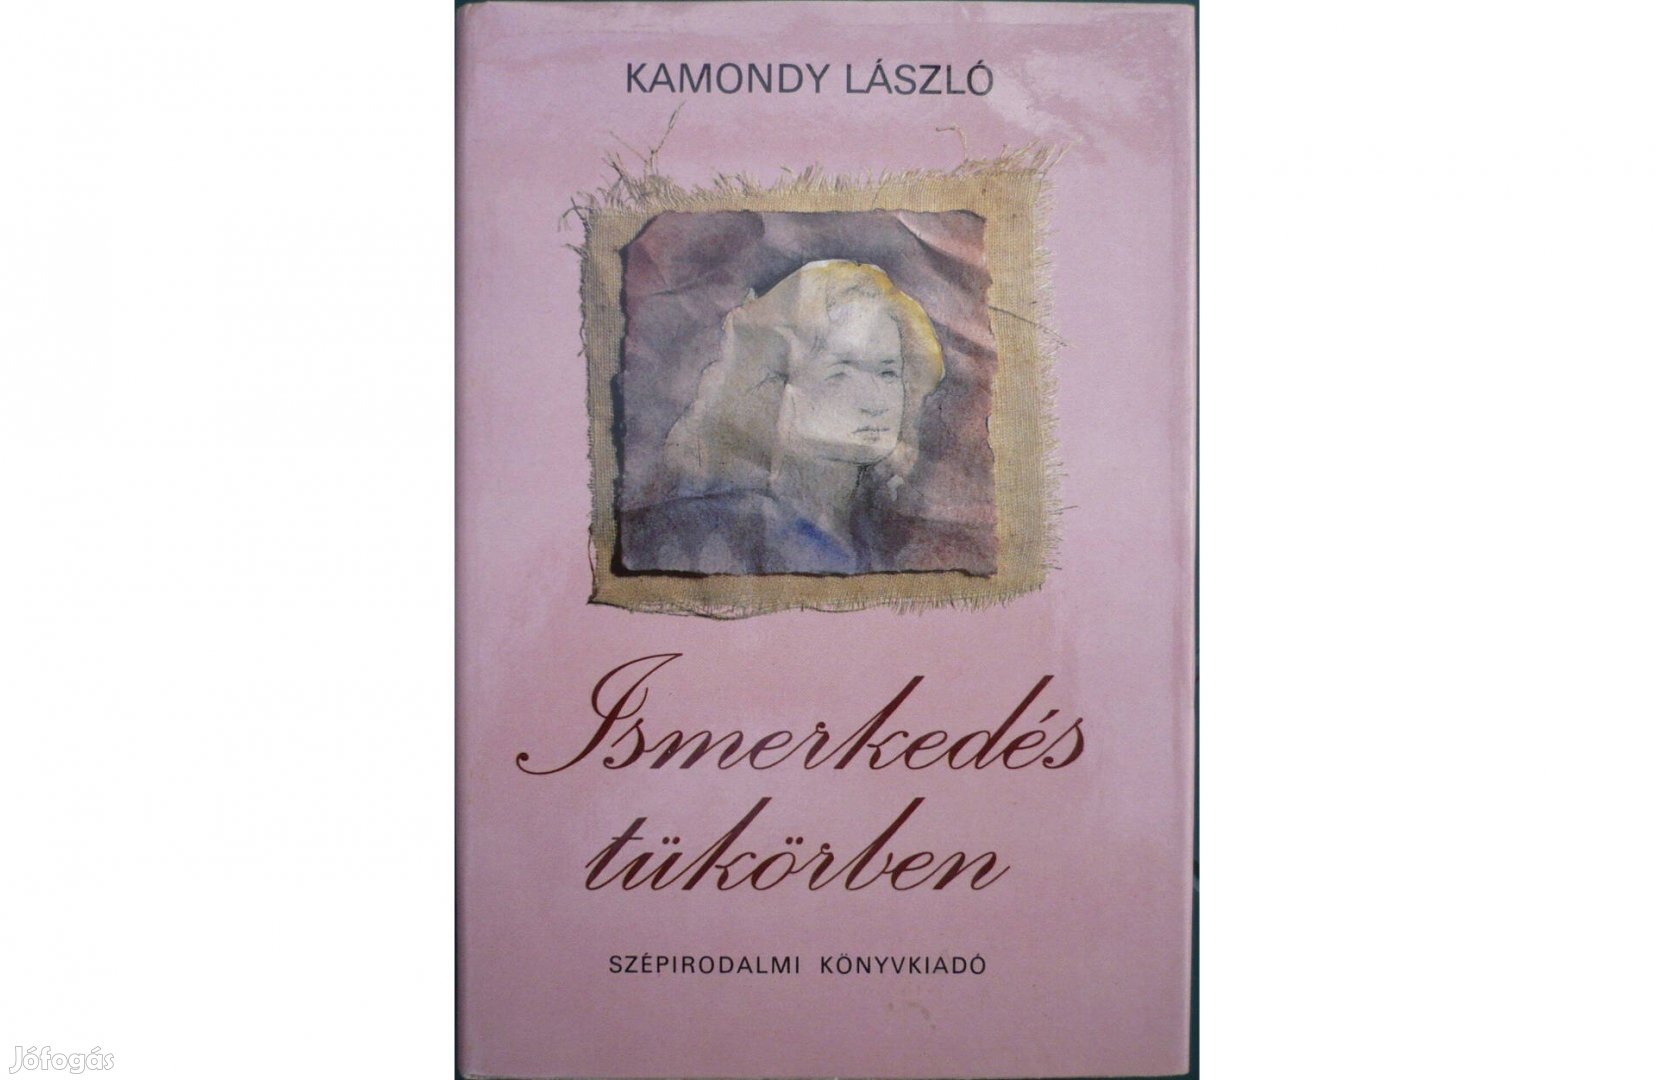 Kamondy László - Ismerkedés tükörben